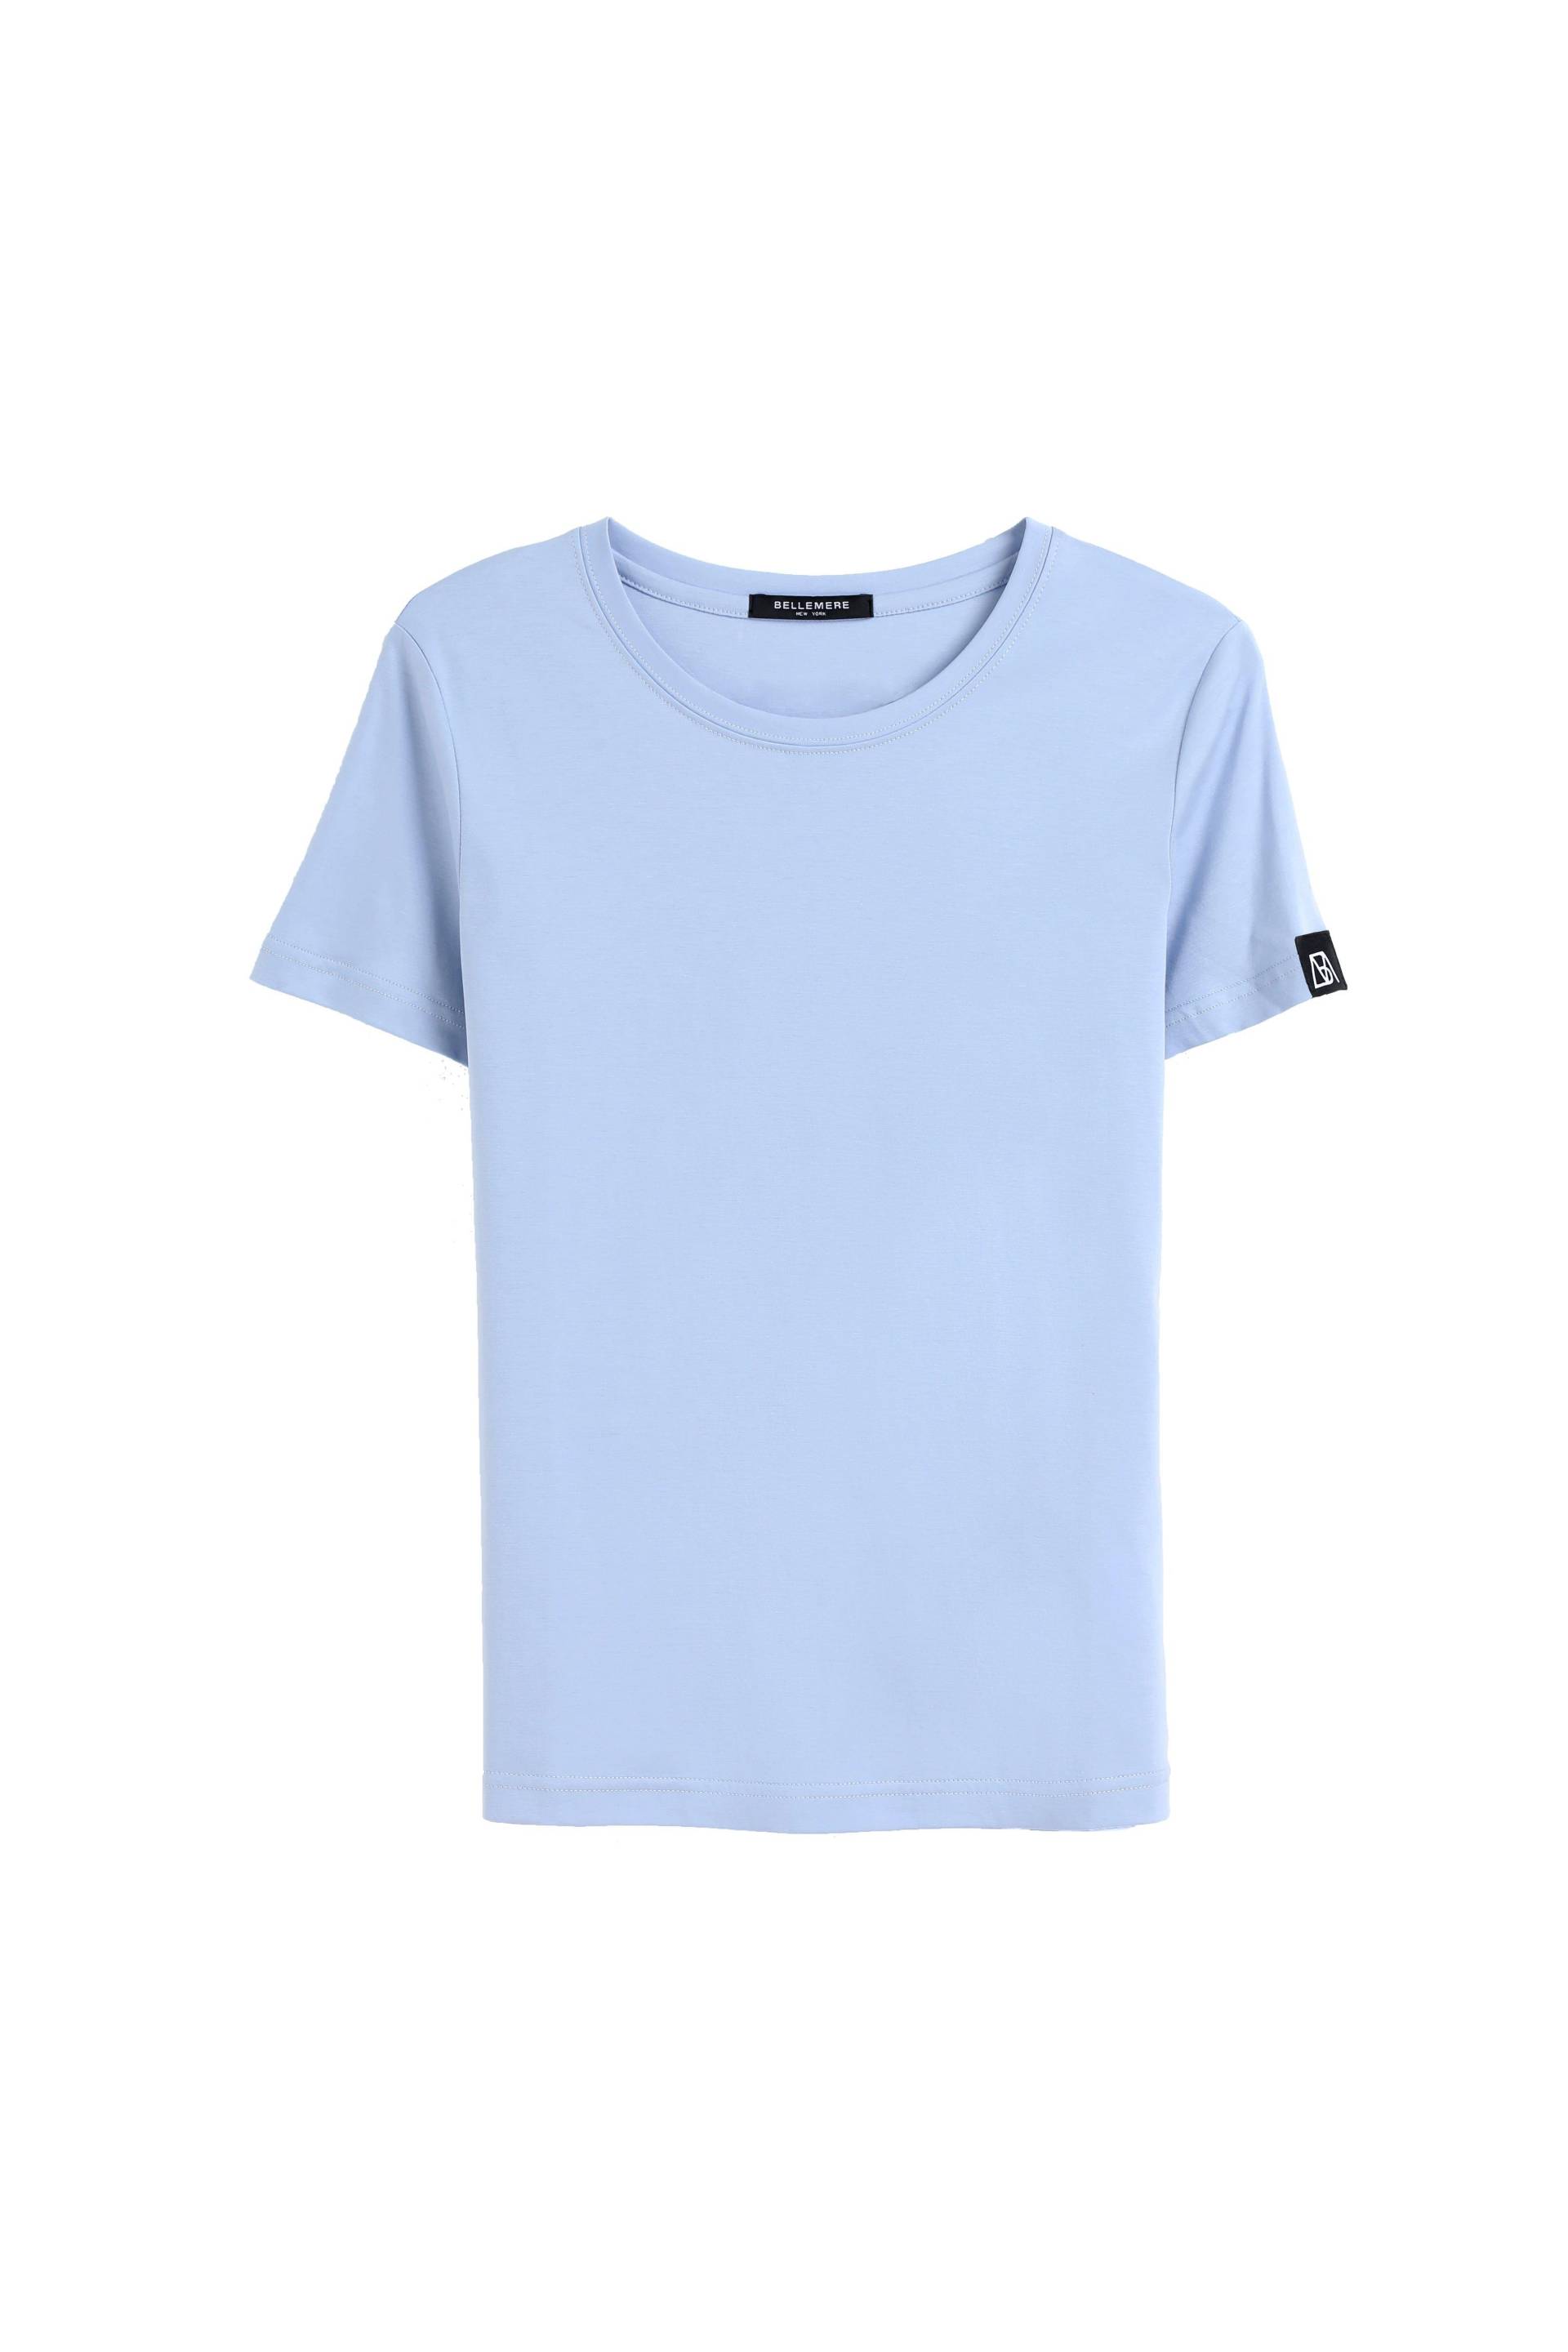 Grand T-shirt Aus Baumwolle Mit Rundhalsausschnitt, 160 G Damen Hellblau S von Bellemere New York